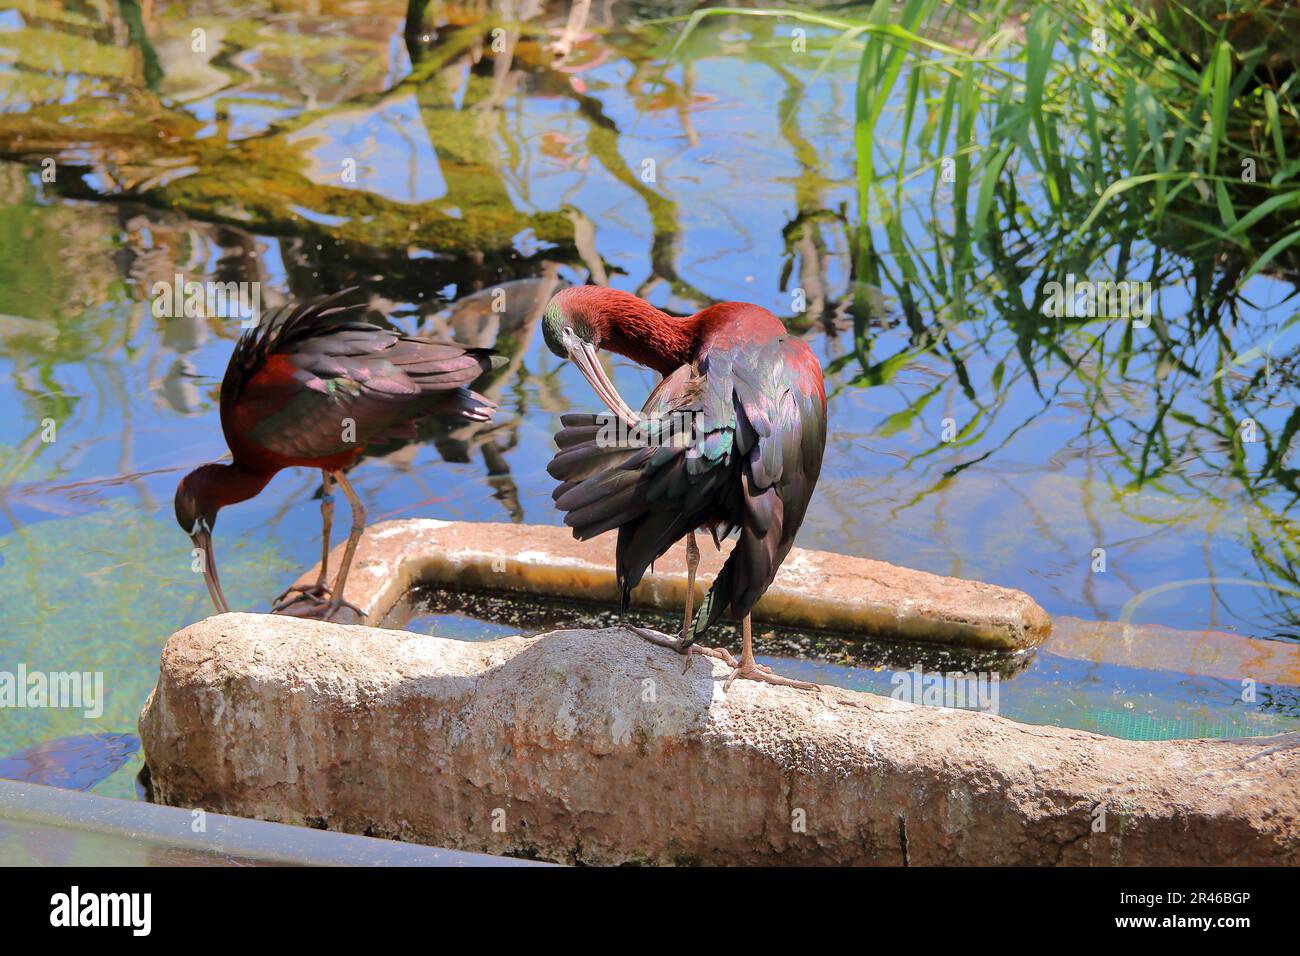 La foto è stata scattata in un parco oceanarium città di Valencia. L'immagine mostra un paio di ibis Birds. Foto Stock